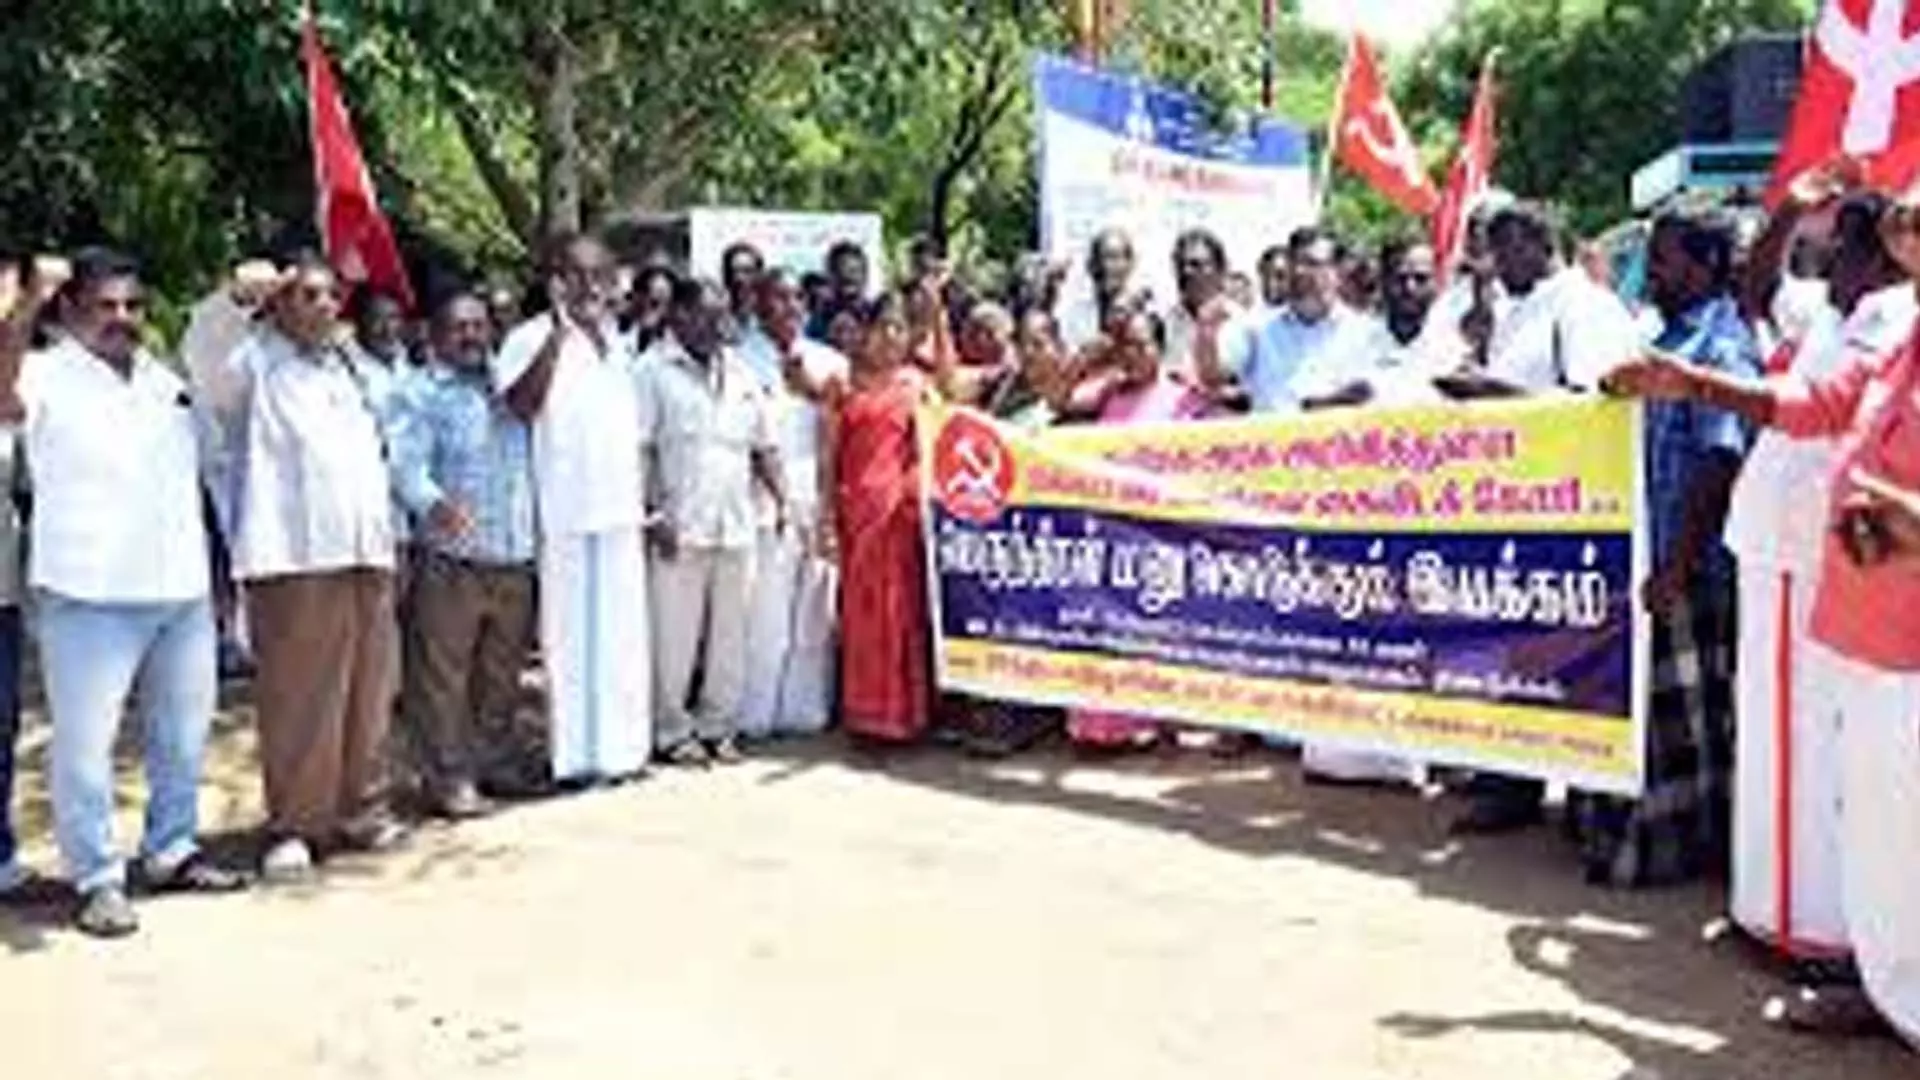 Tamil Nadu News: बिजली दरों में बढ़ोतरी के खिलाफ सीपीएम करेगी विरोध प्रदर्शन